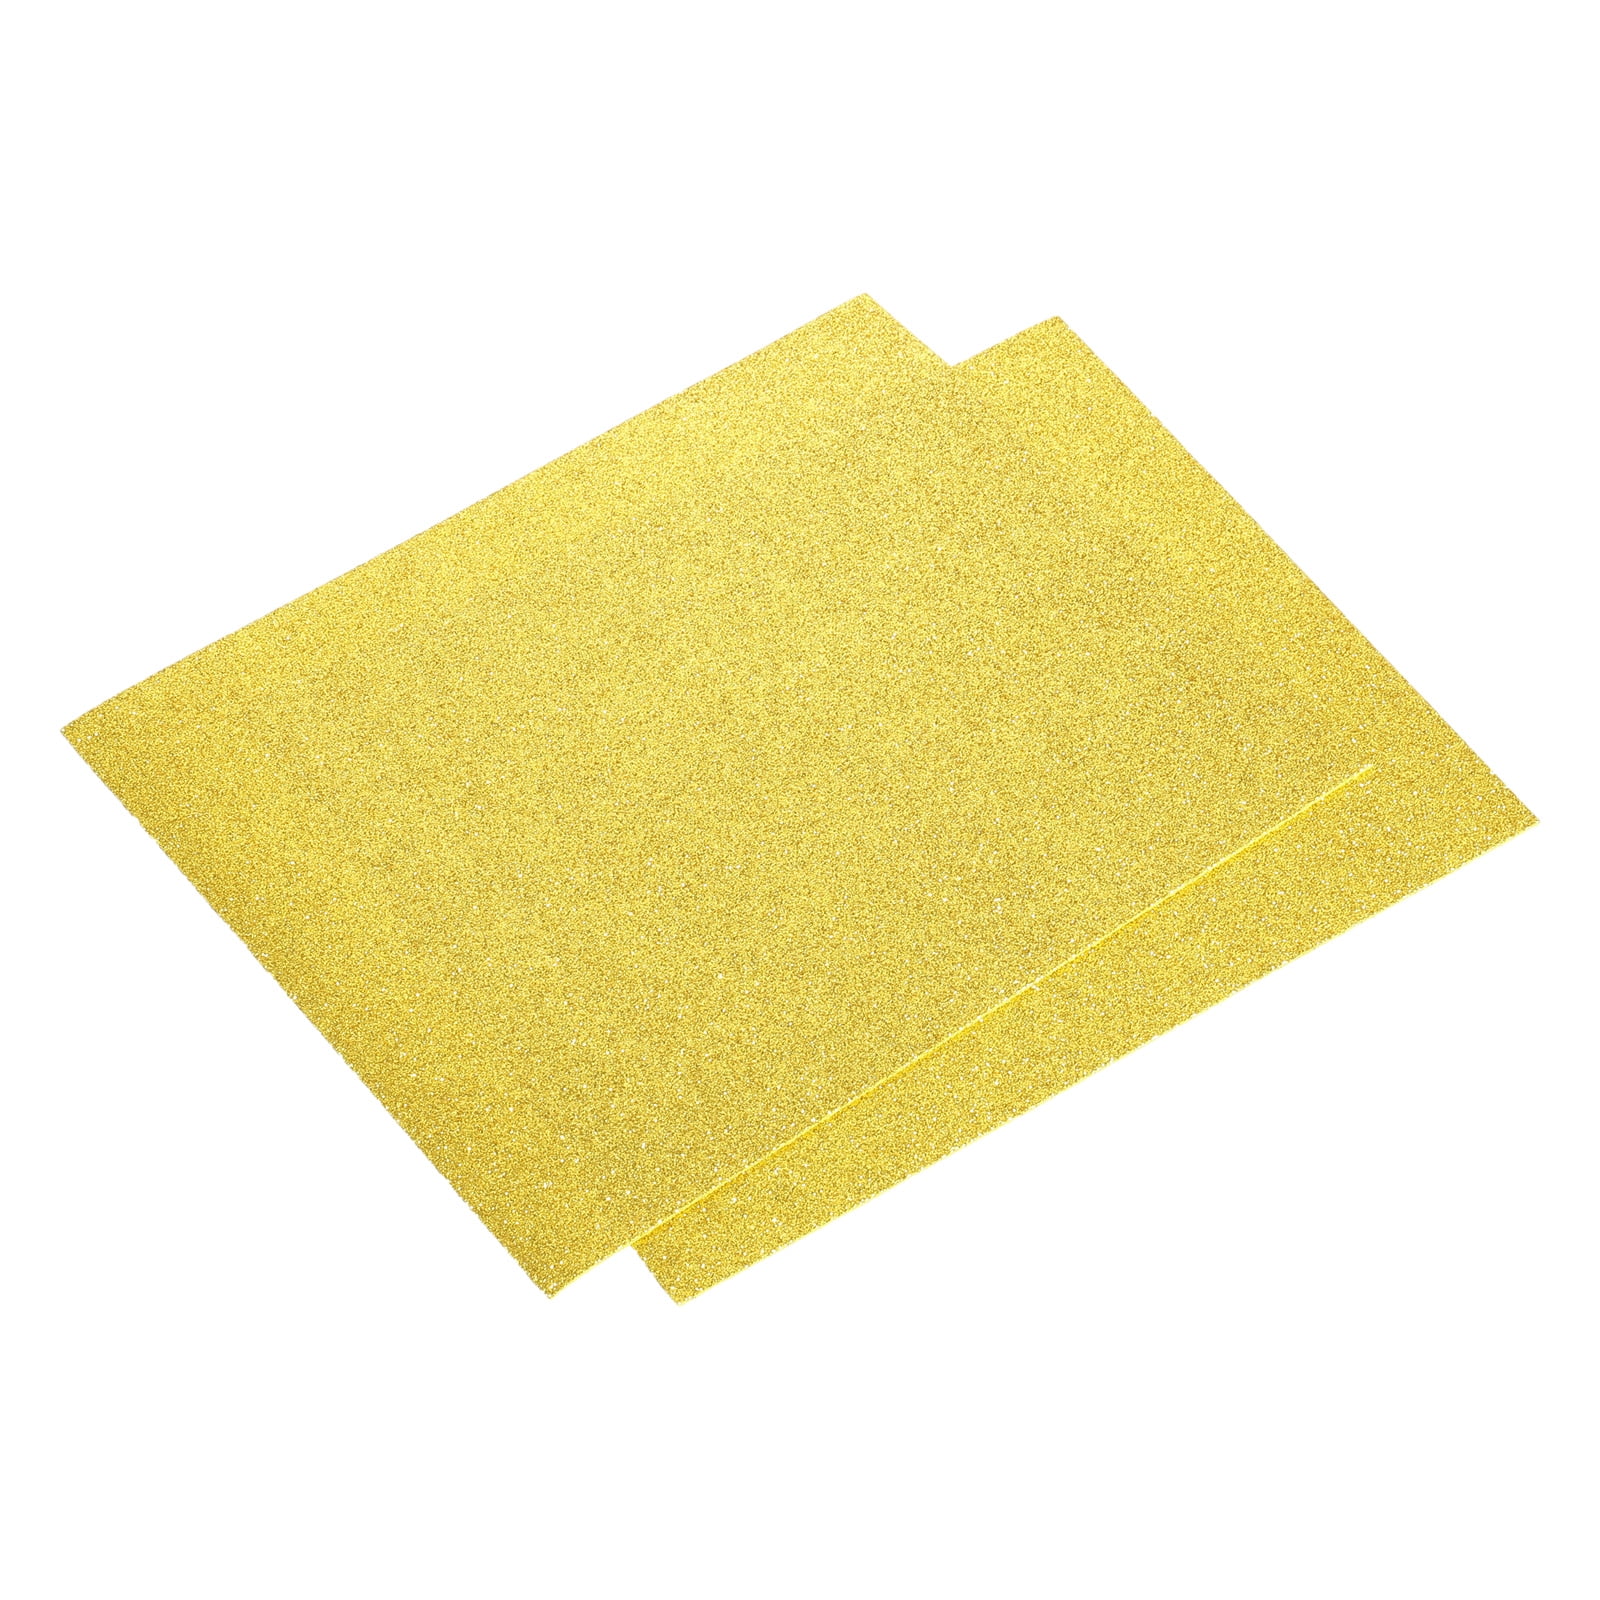 10PCS thick craft gold glitter foam paper foamy paper Glitter EVA